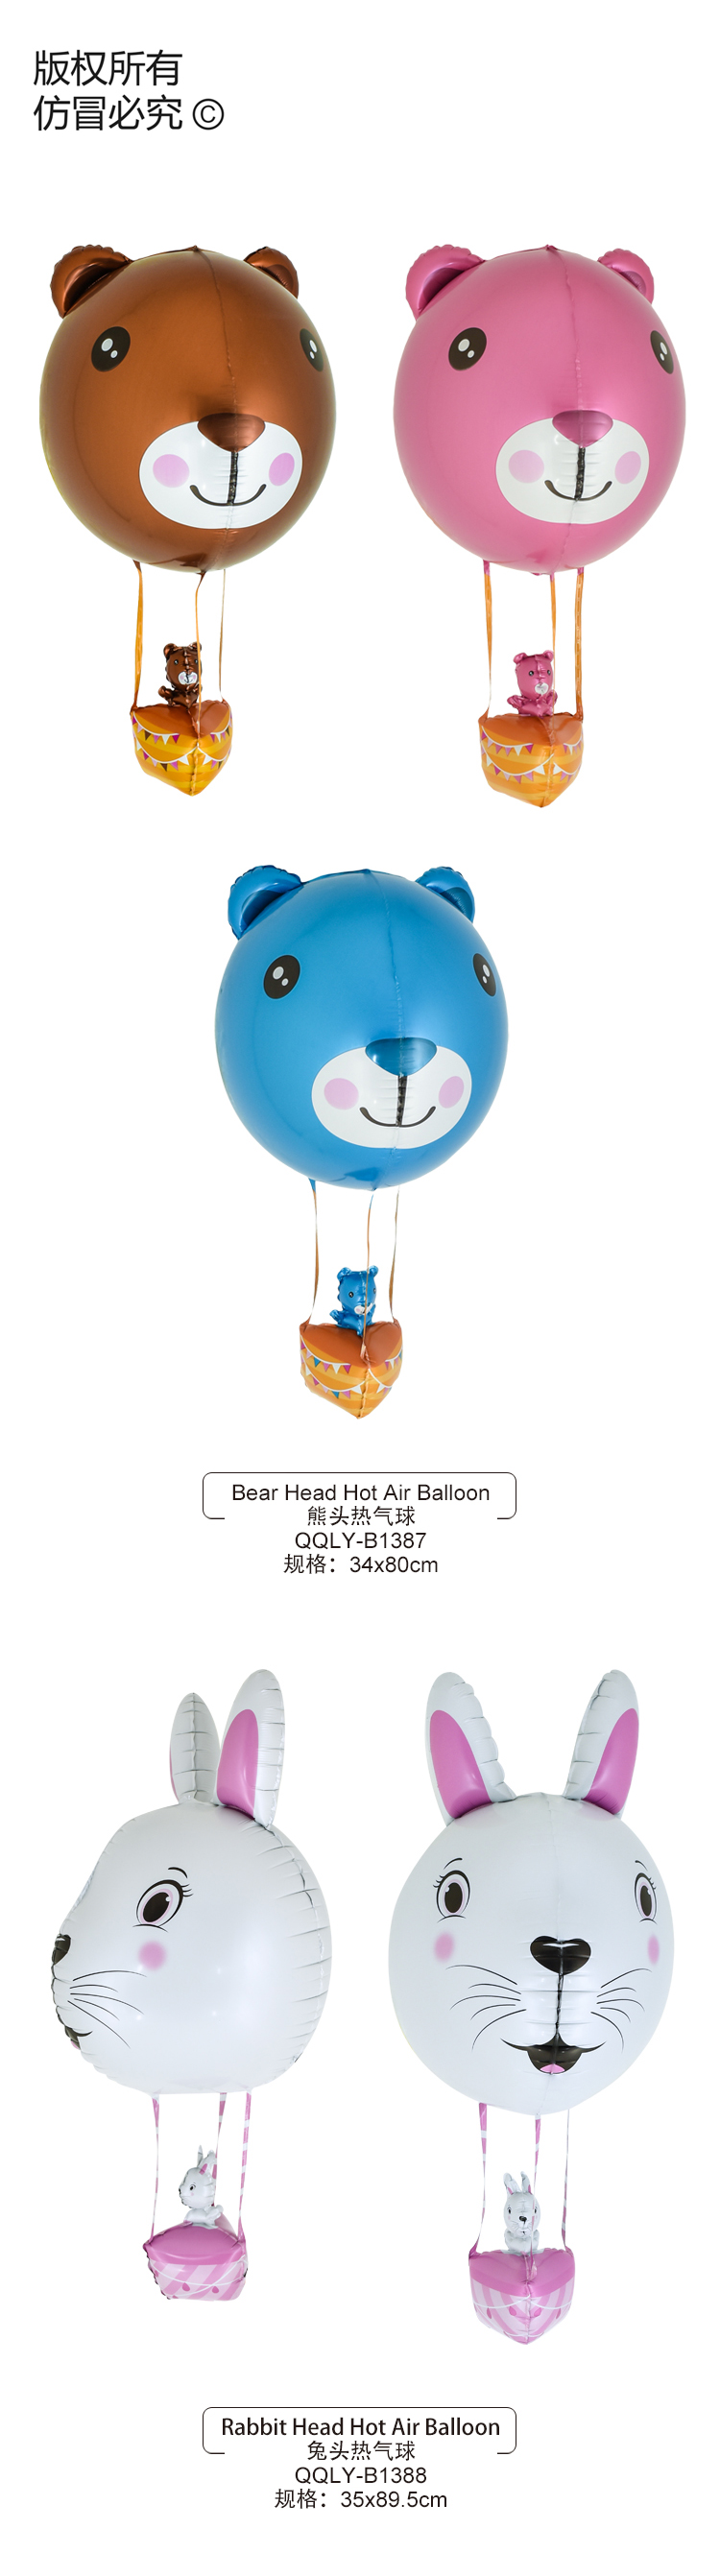 动物热气球.jpg